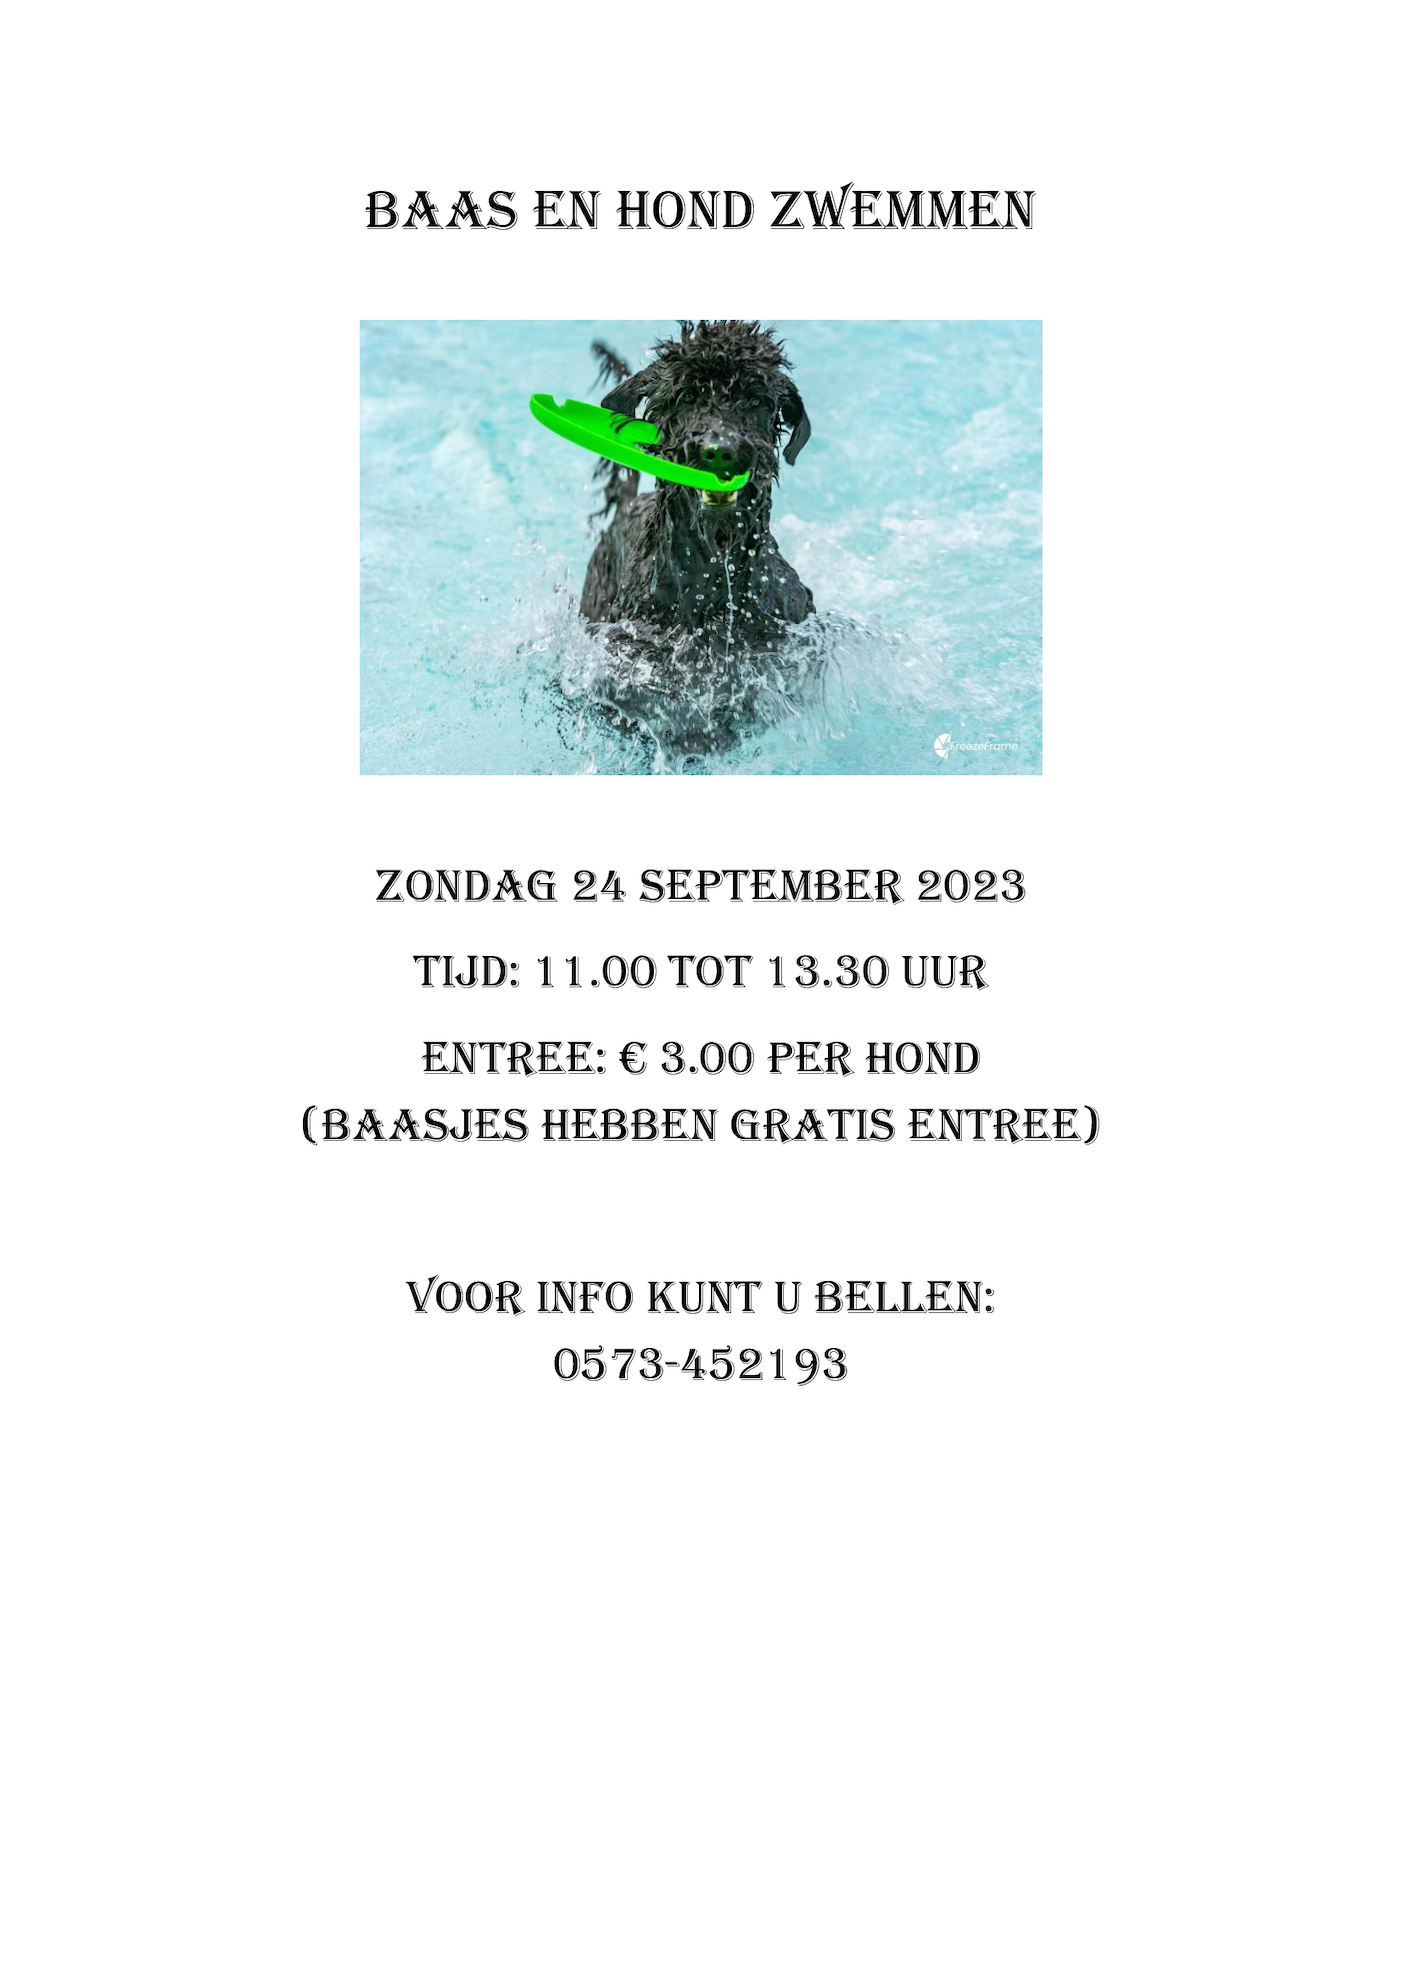 Baas-en-Hond-zwemmen-2023